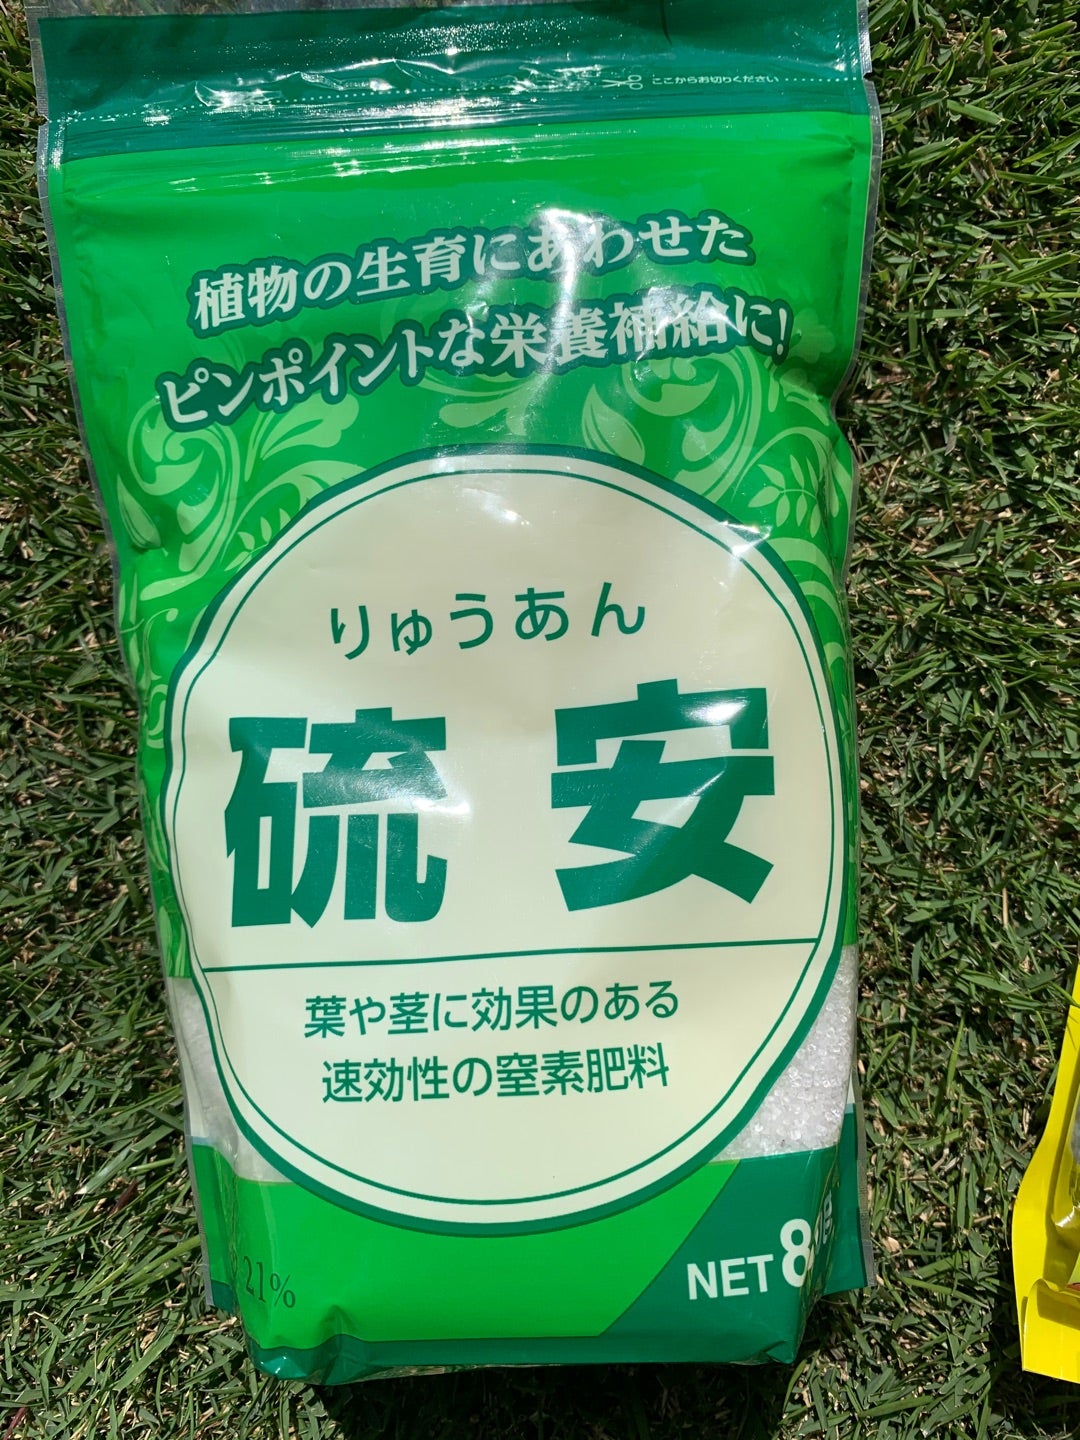 雨なので芝生に硫安撒いてみました。 | 芝生の育て方 おすすめアイテムの紹介！楽しく楽に芝生管理